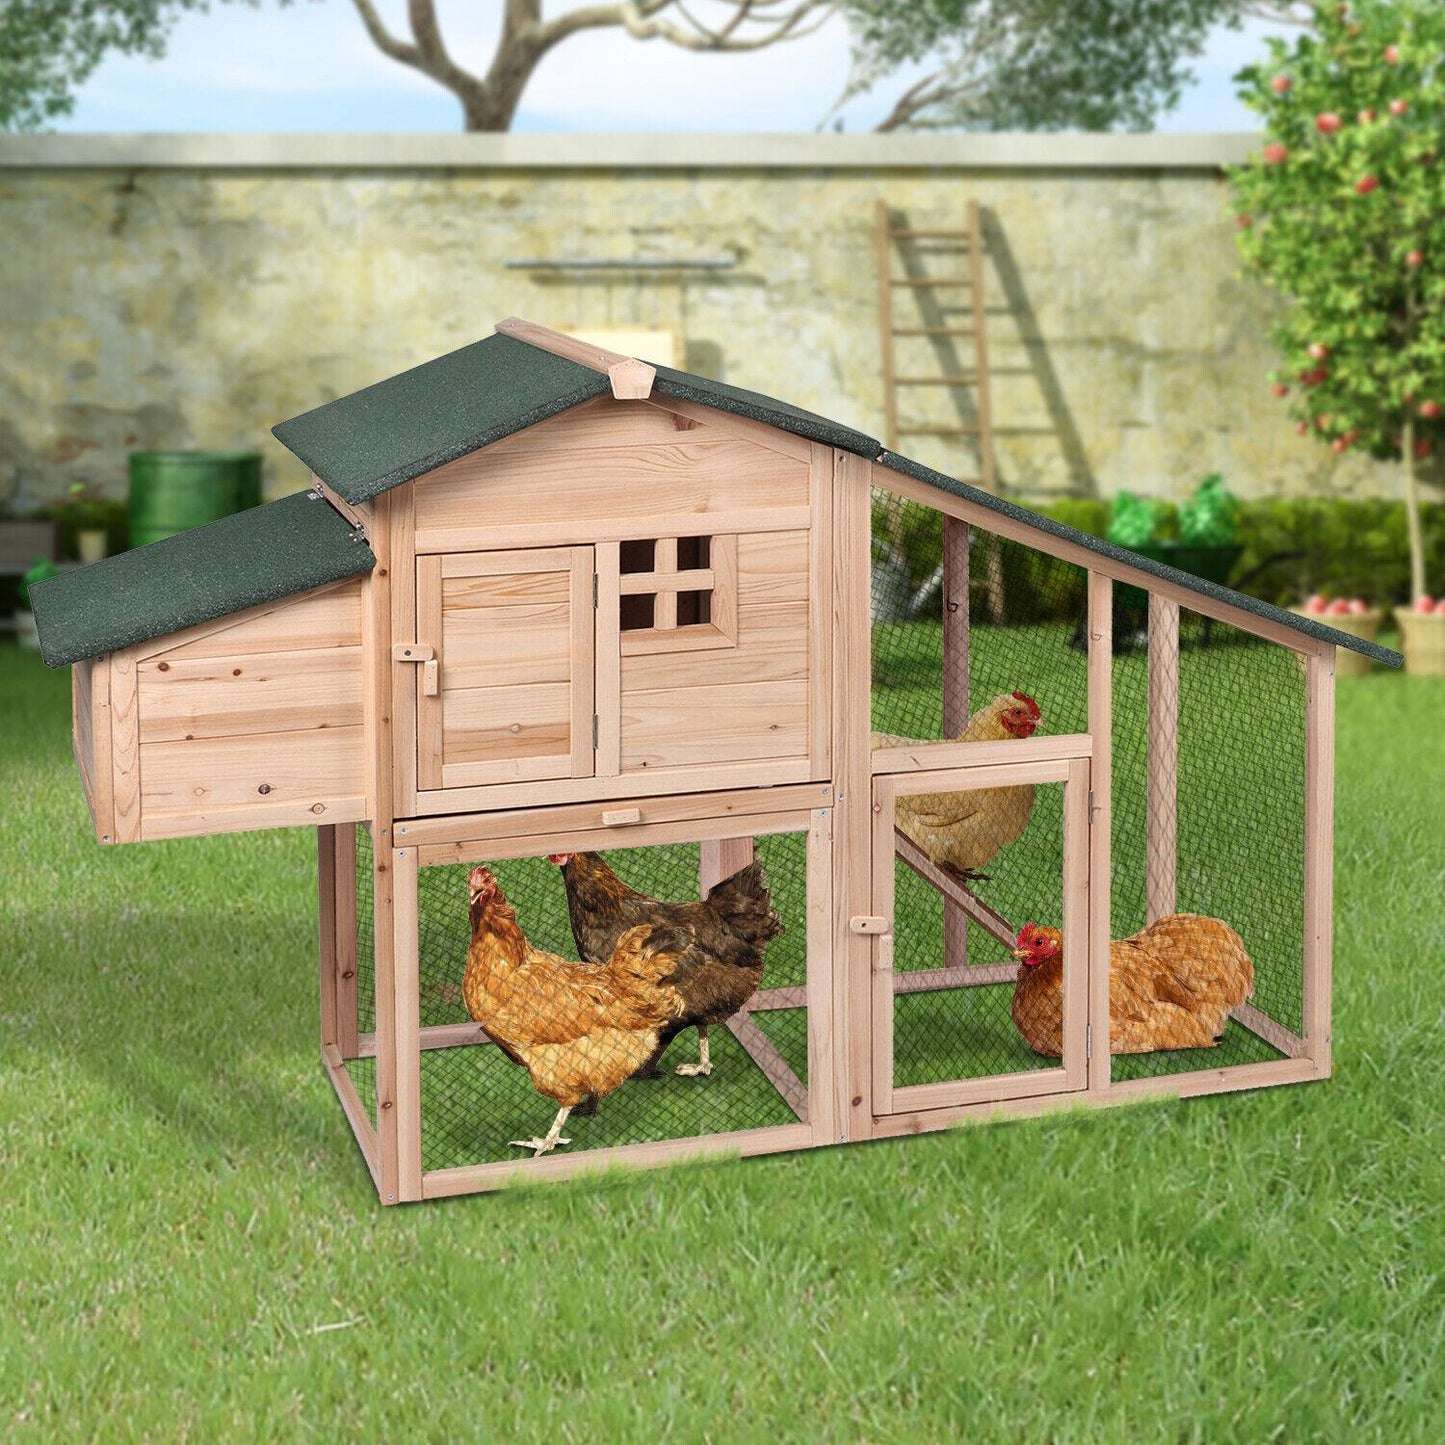 SunnyDays 2 Tier Chicken Coop House